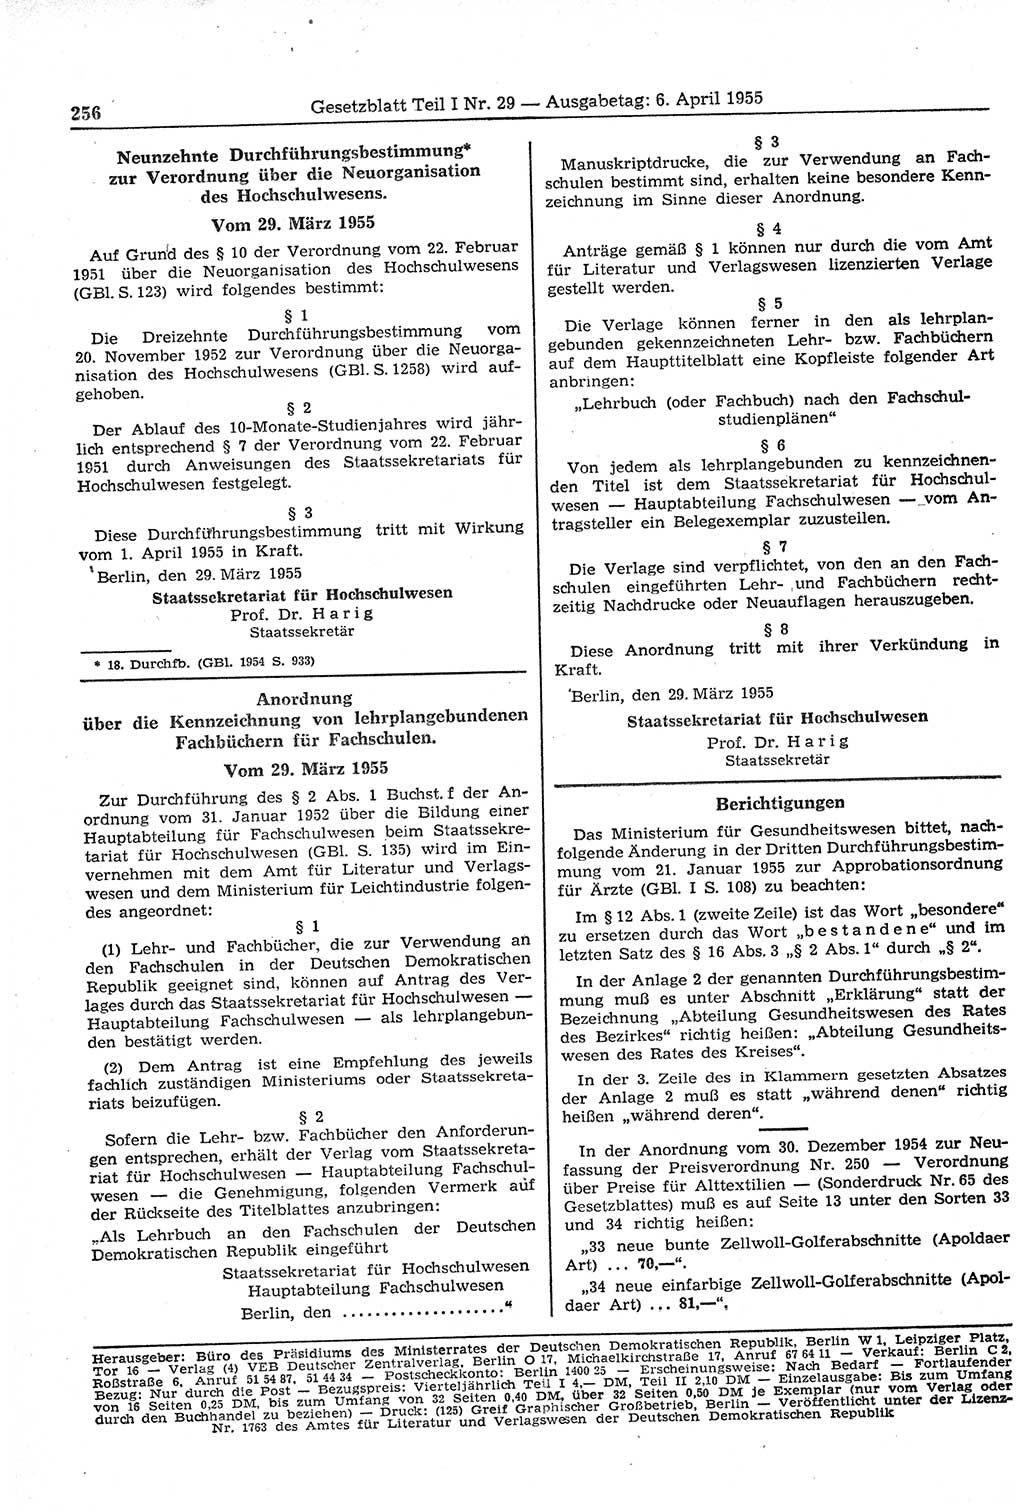 Gesetzblatt (GBl.) der Deutschen Demokratischen Republik (DDR) Teil Ⅰ 1955, Seite 256 (GBl. DDR Ⅰ 1955, S. 256)